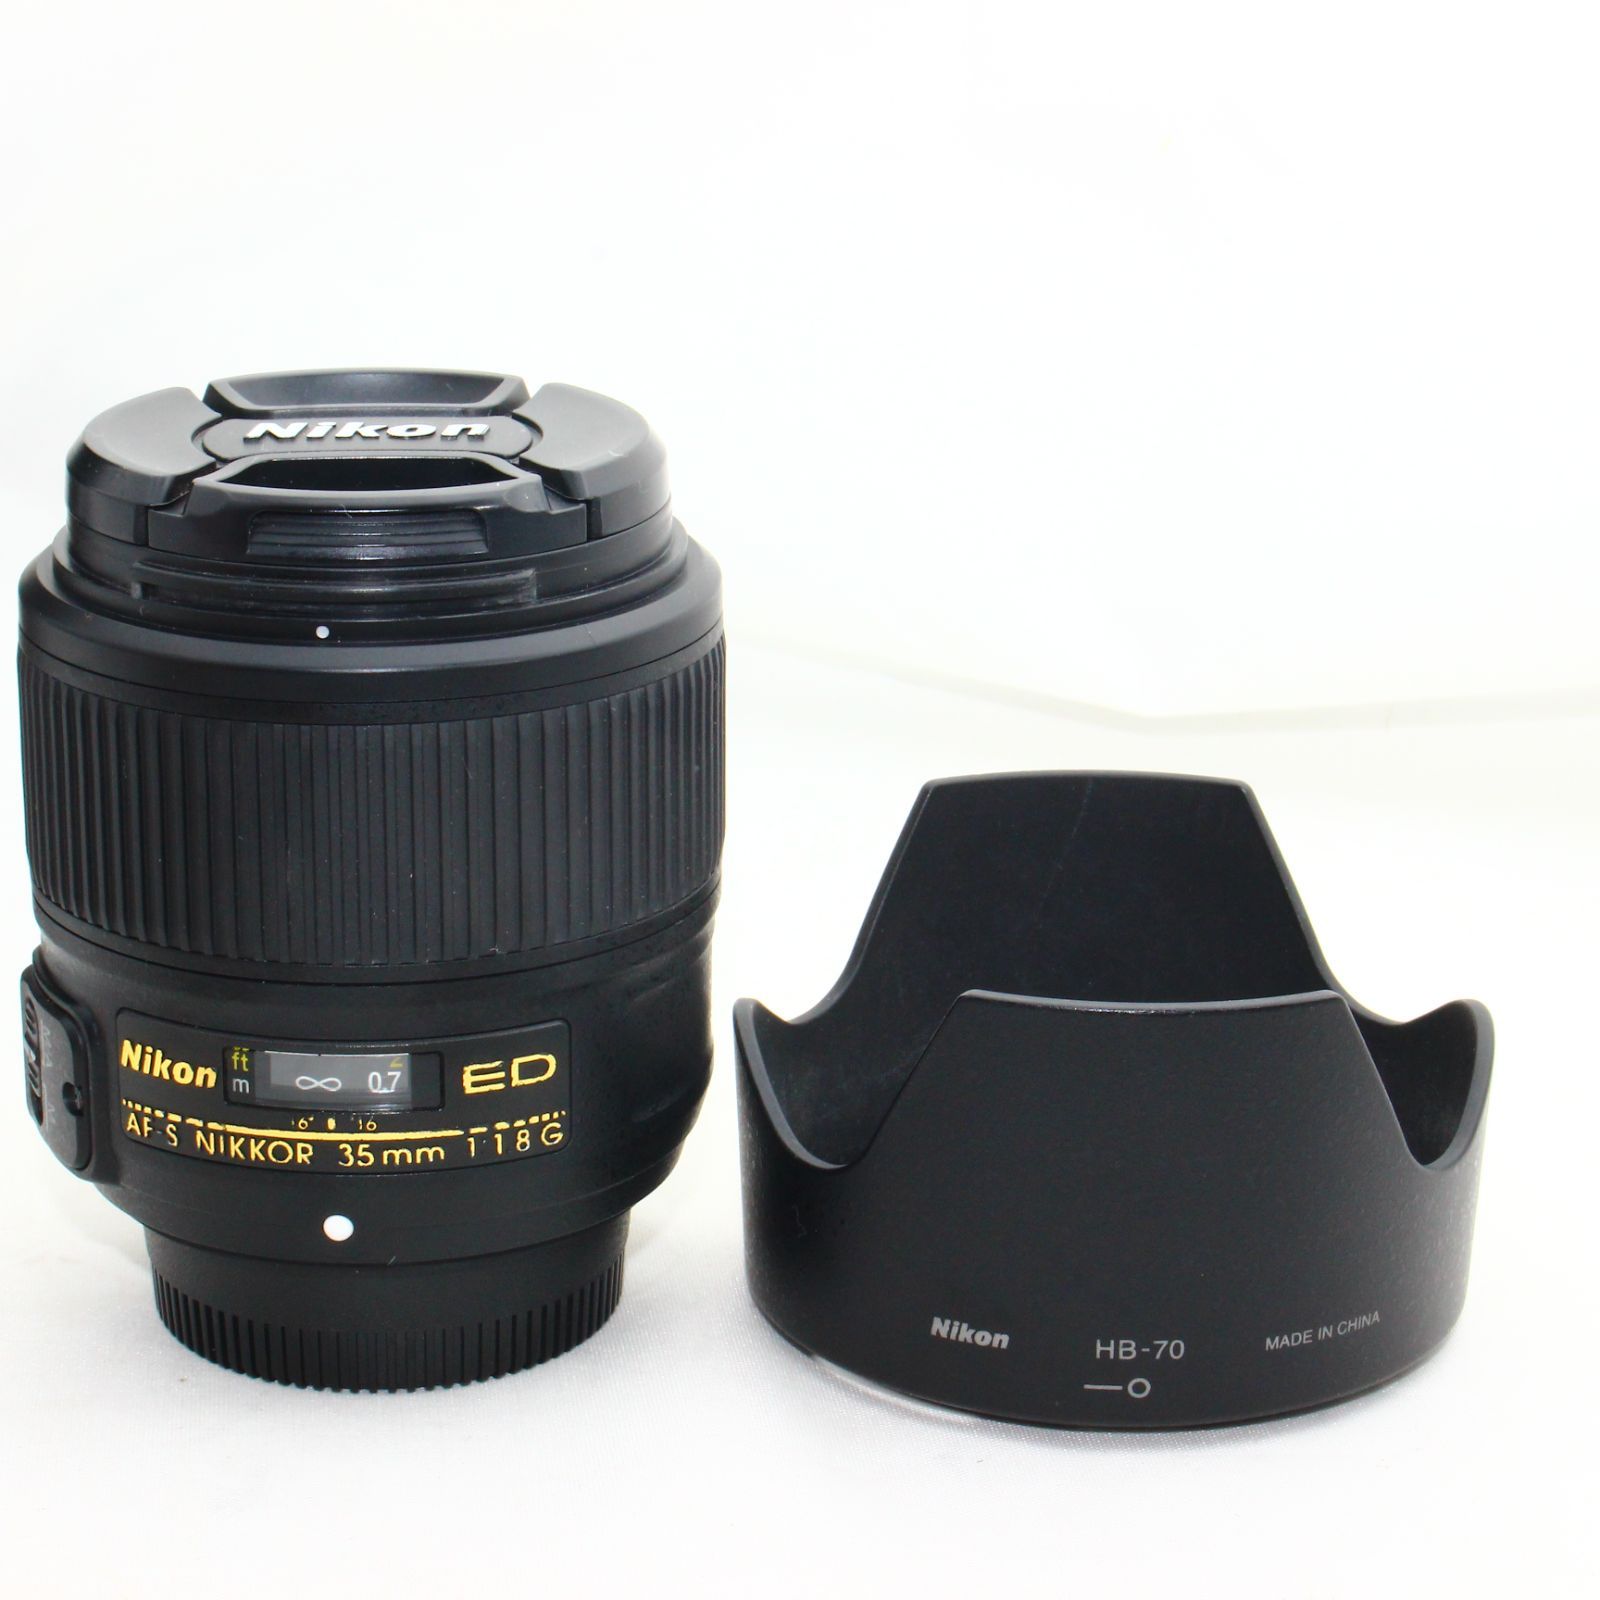 Nikon DX AF-S NIKKOR 35mm F 1.8 G ニコン - レンズ(単焦点)